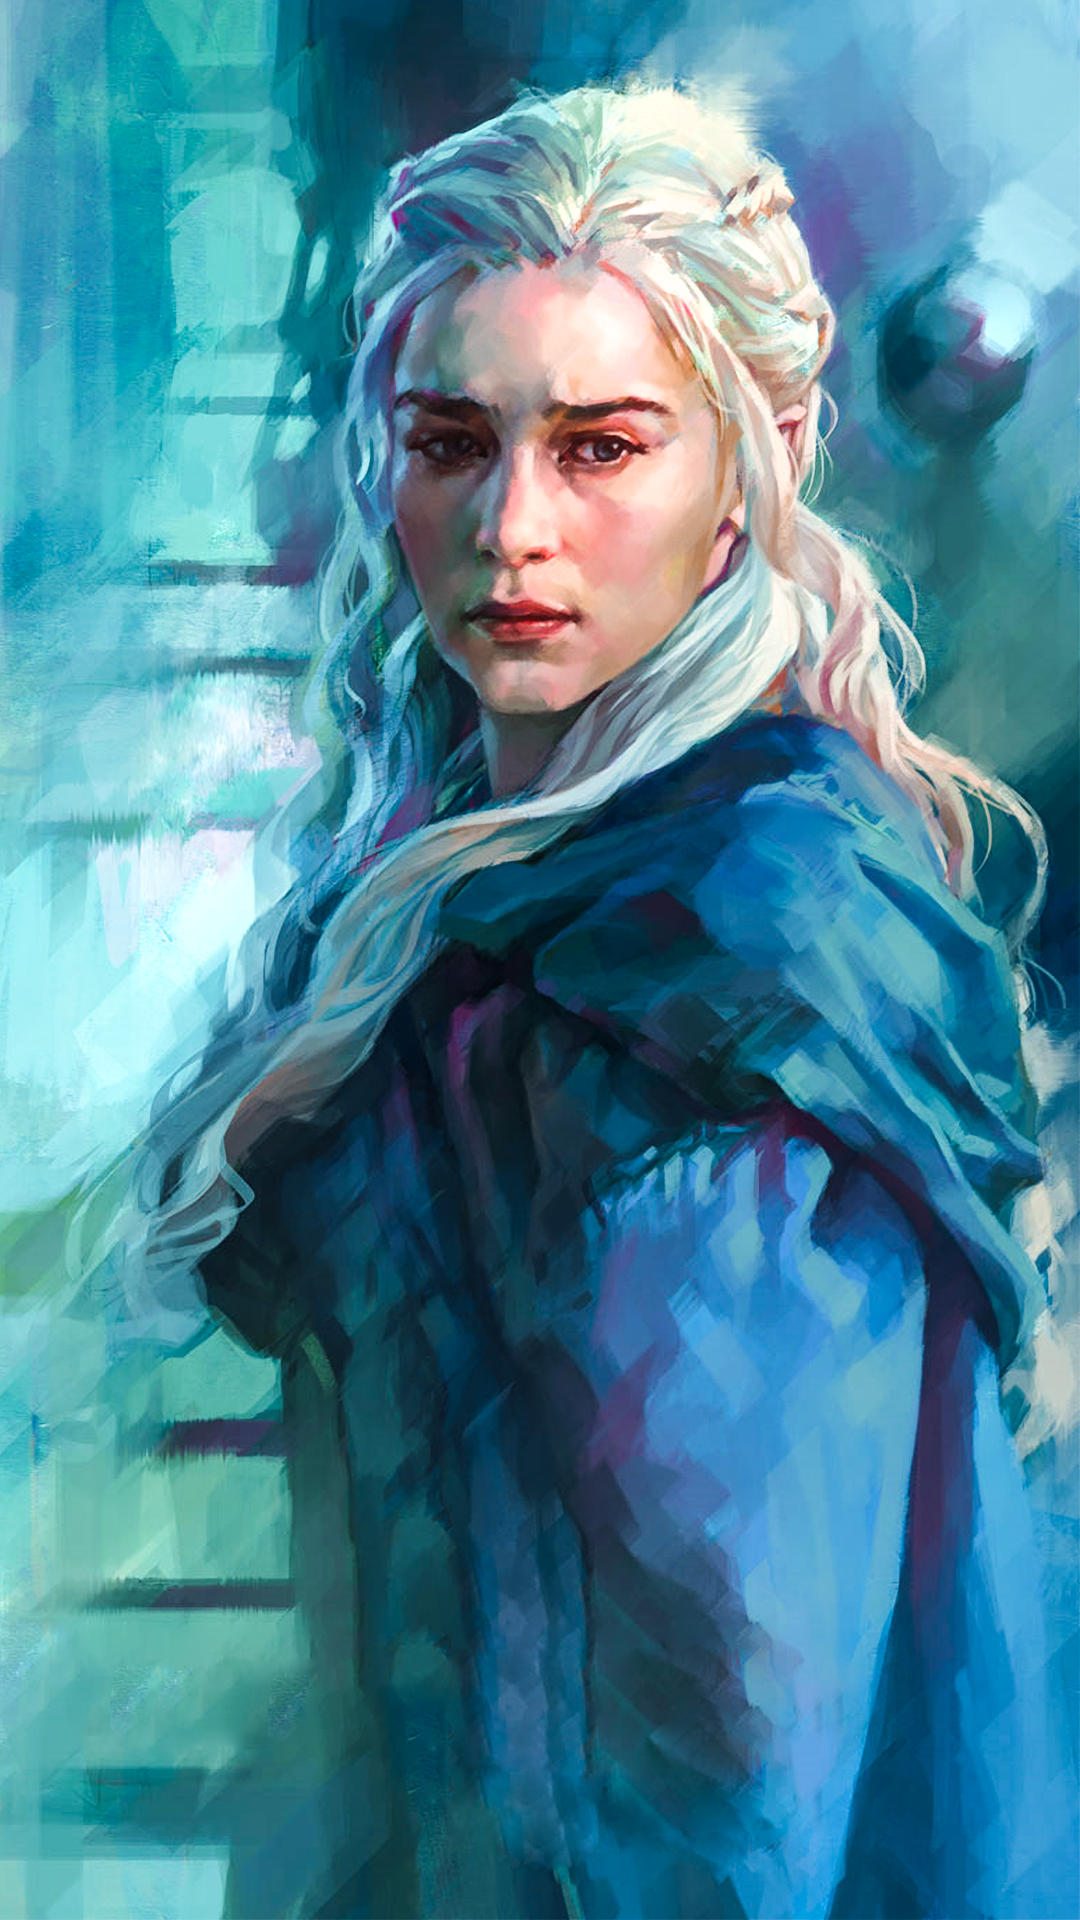 Daenerys Targaryen Wallpaper - Game Of Thrones Daenerys Targaryen Deviantart , HD Wallpaper & Backgrounds